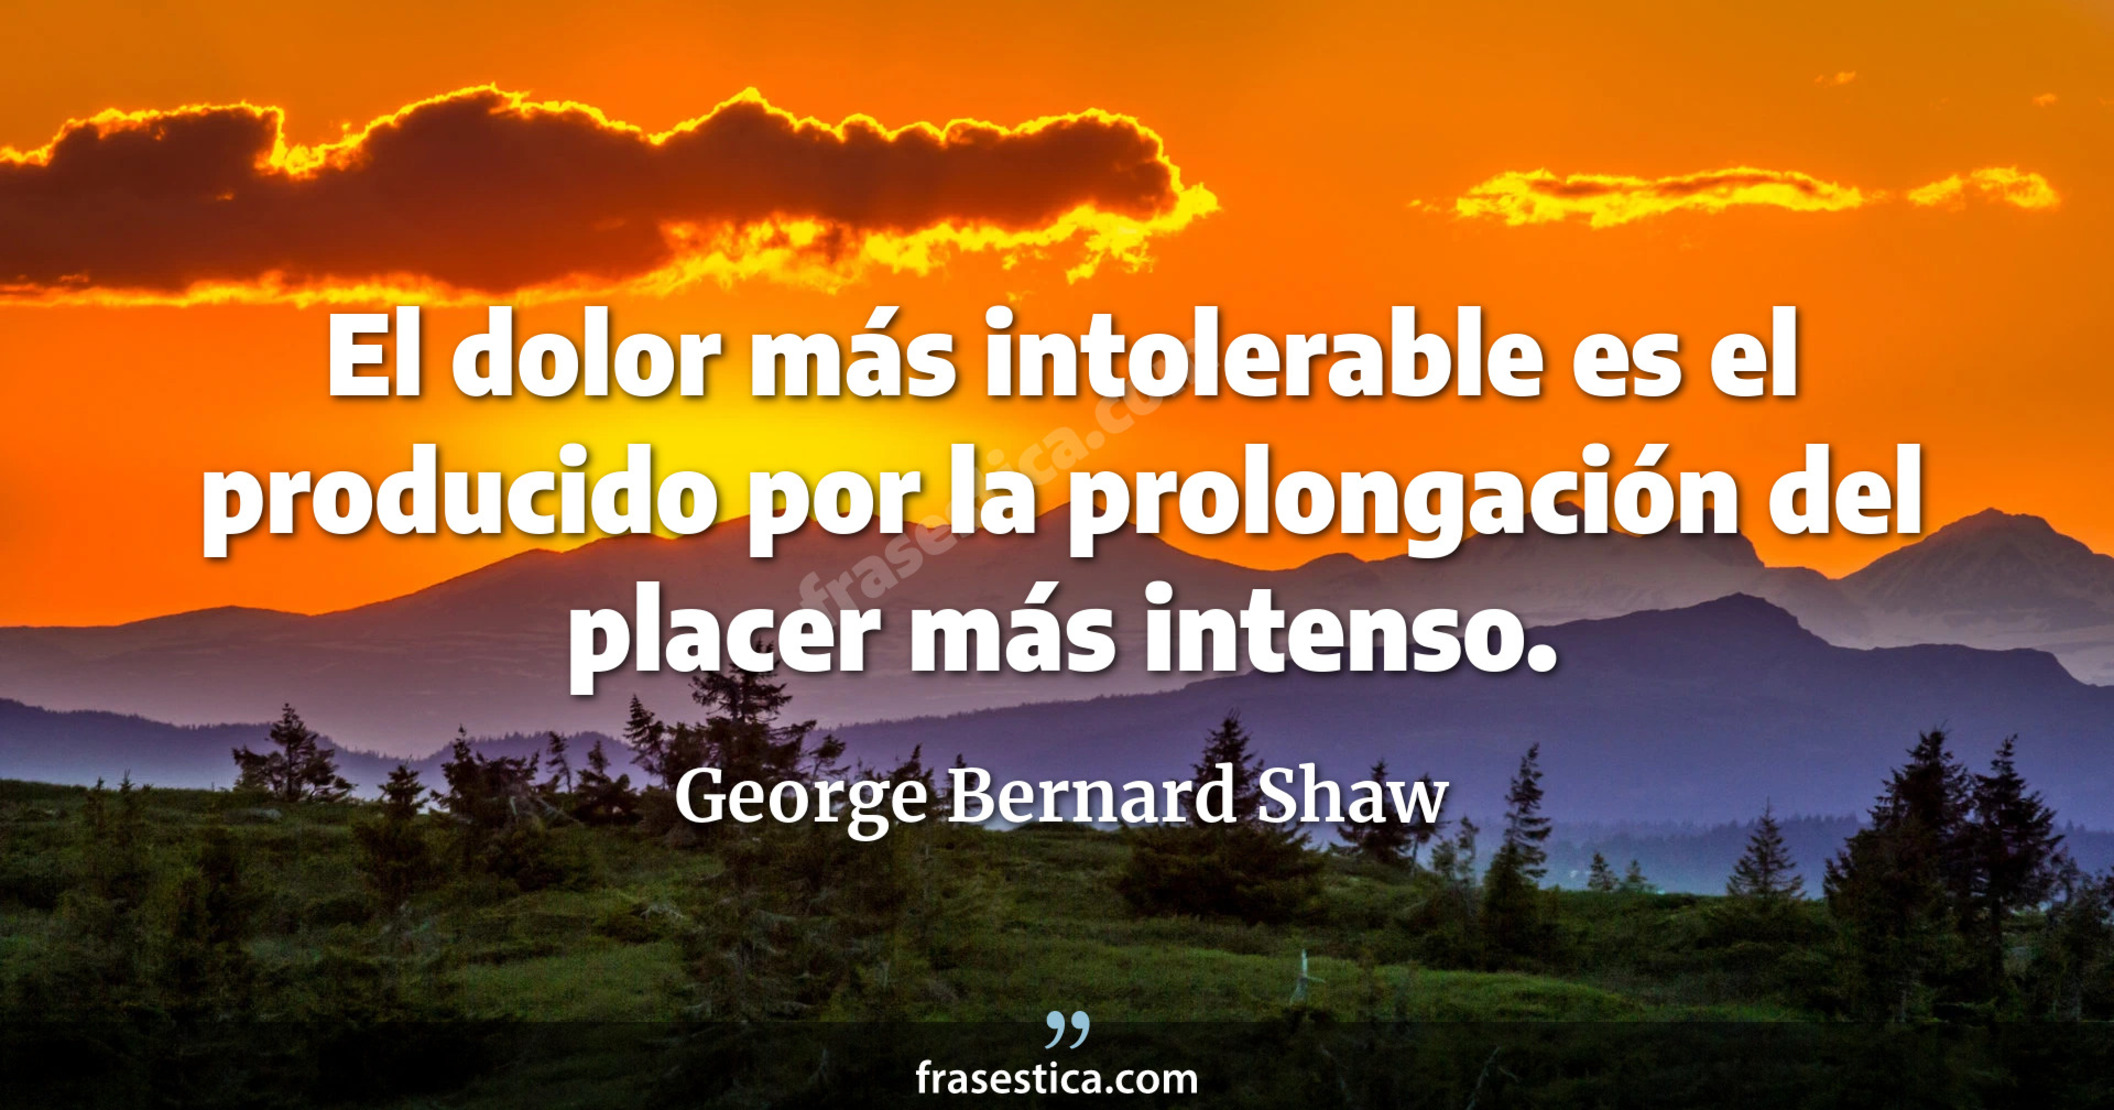 El dolor más intolerable es el producido por la prolongación del placer más intenso. - George Bernard Shaw